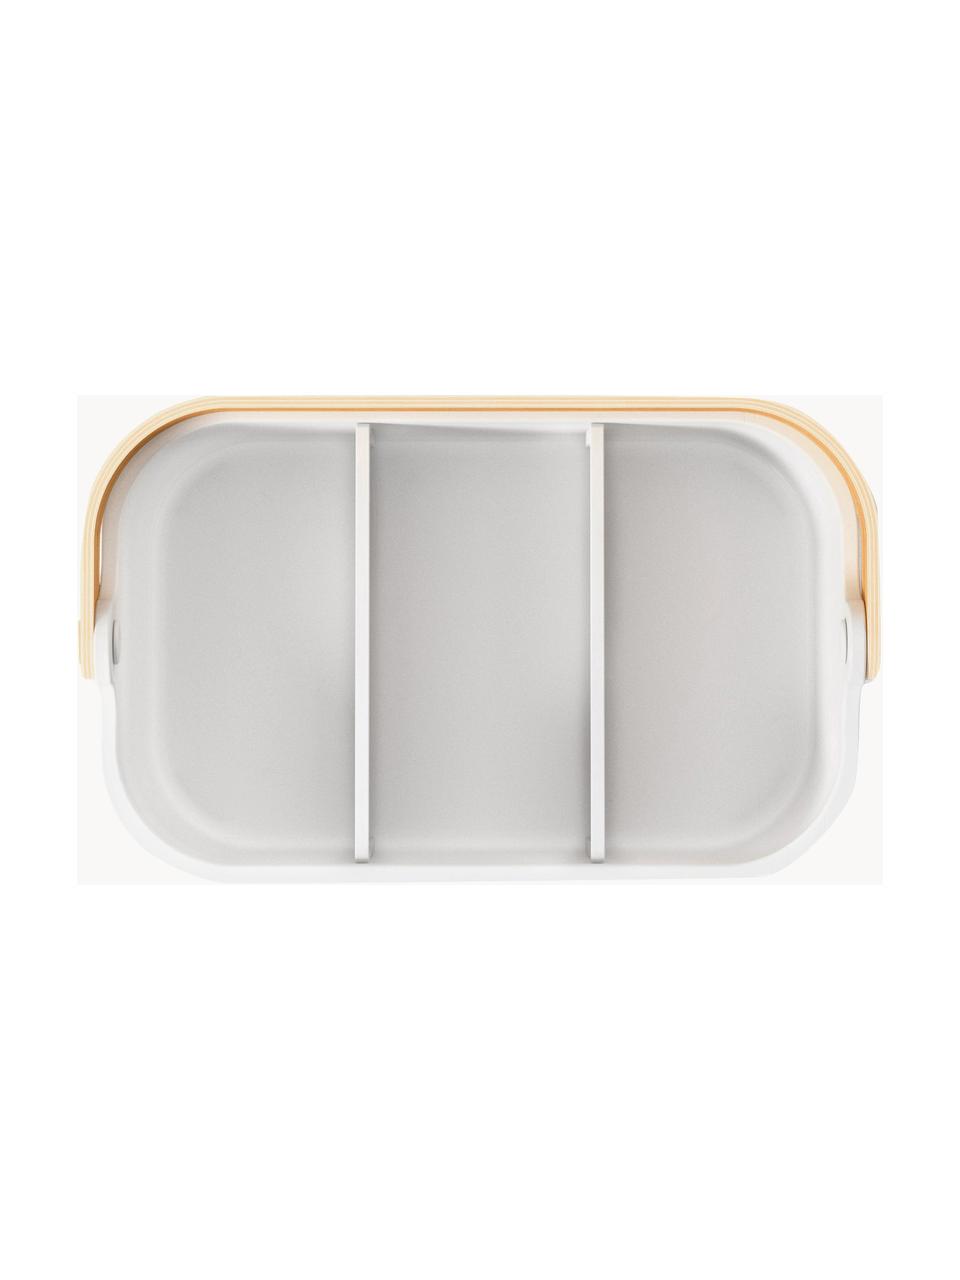 Küchenaufbewahrungsbehälter Bellwood, Behälter: Kunststoff, Griff: Eschenholz, Weiß, Helles Holz, B 28 x H 13 cm